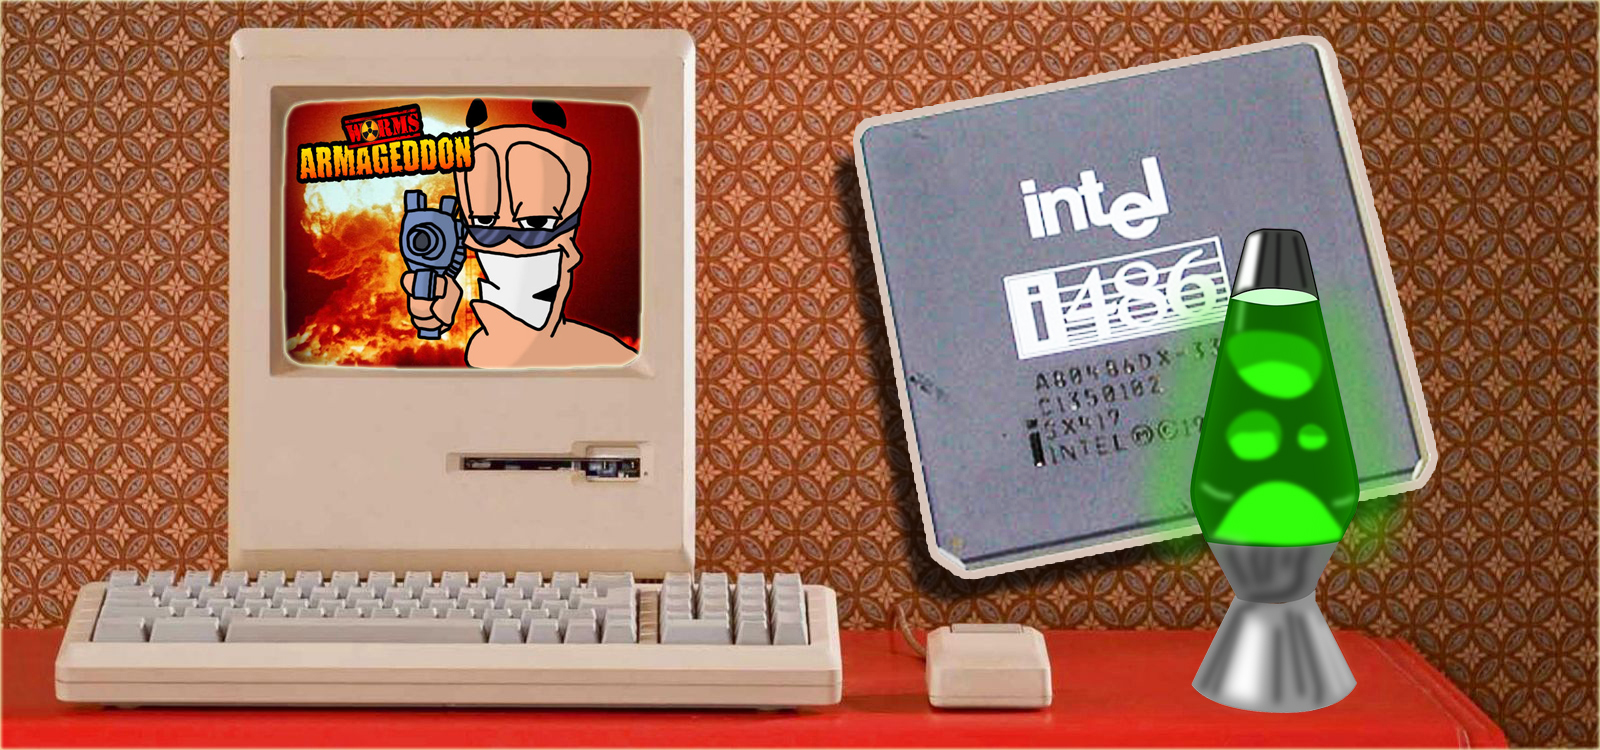 Попытка запустить Worms на Intel486DX процессоре ??